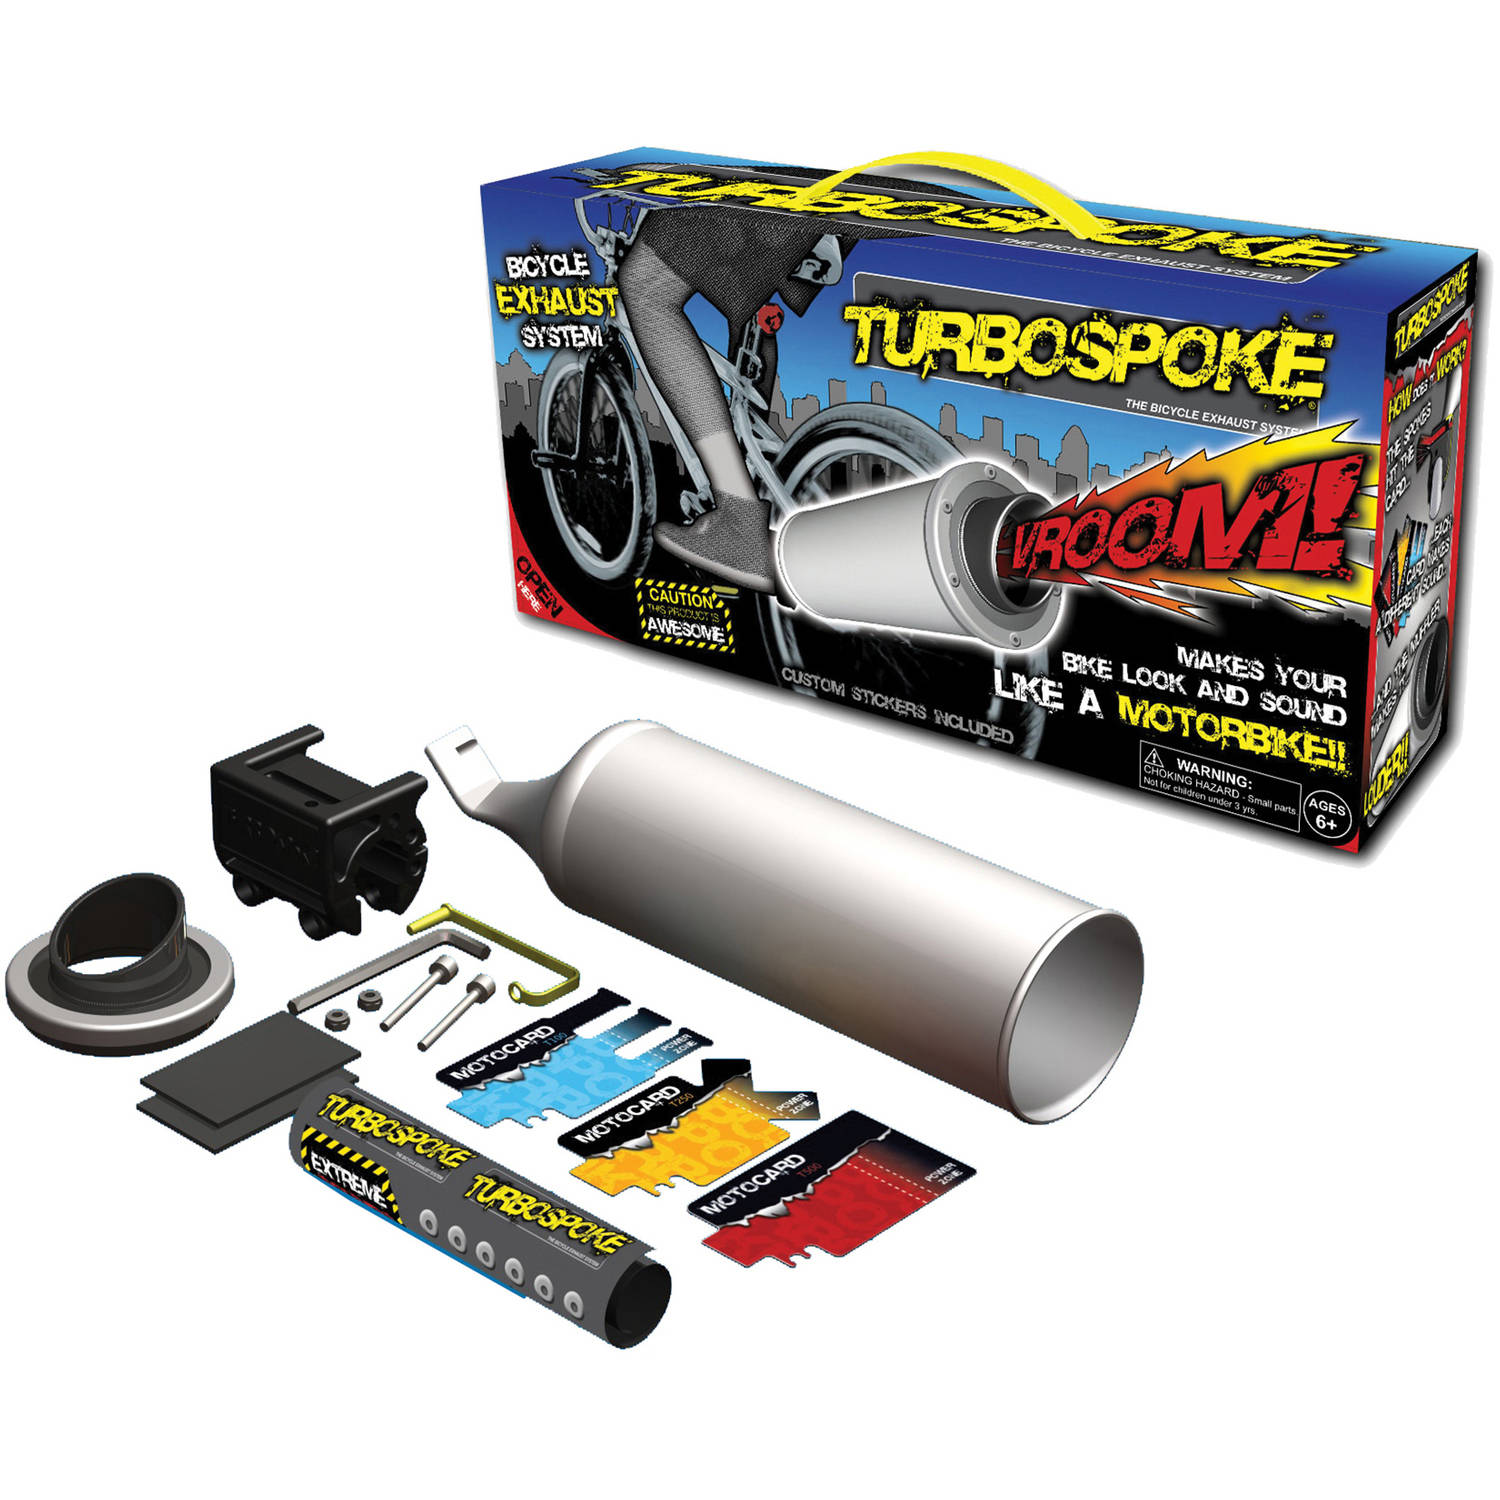 Turbospoke - image 1 of 8